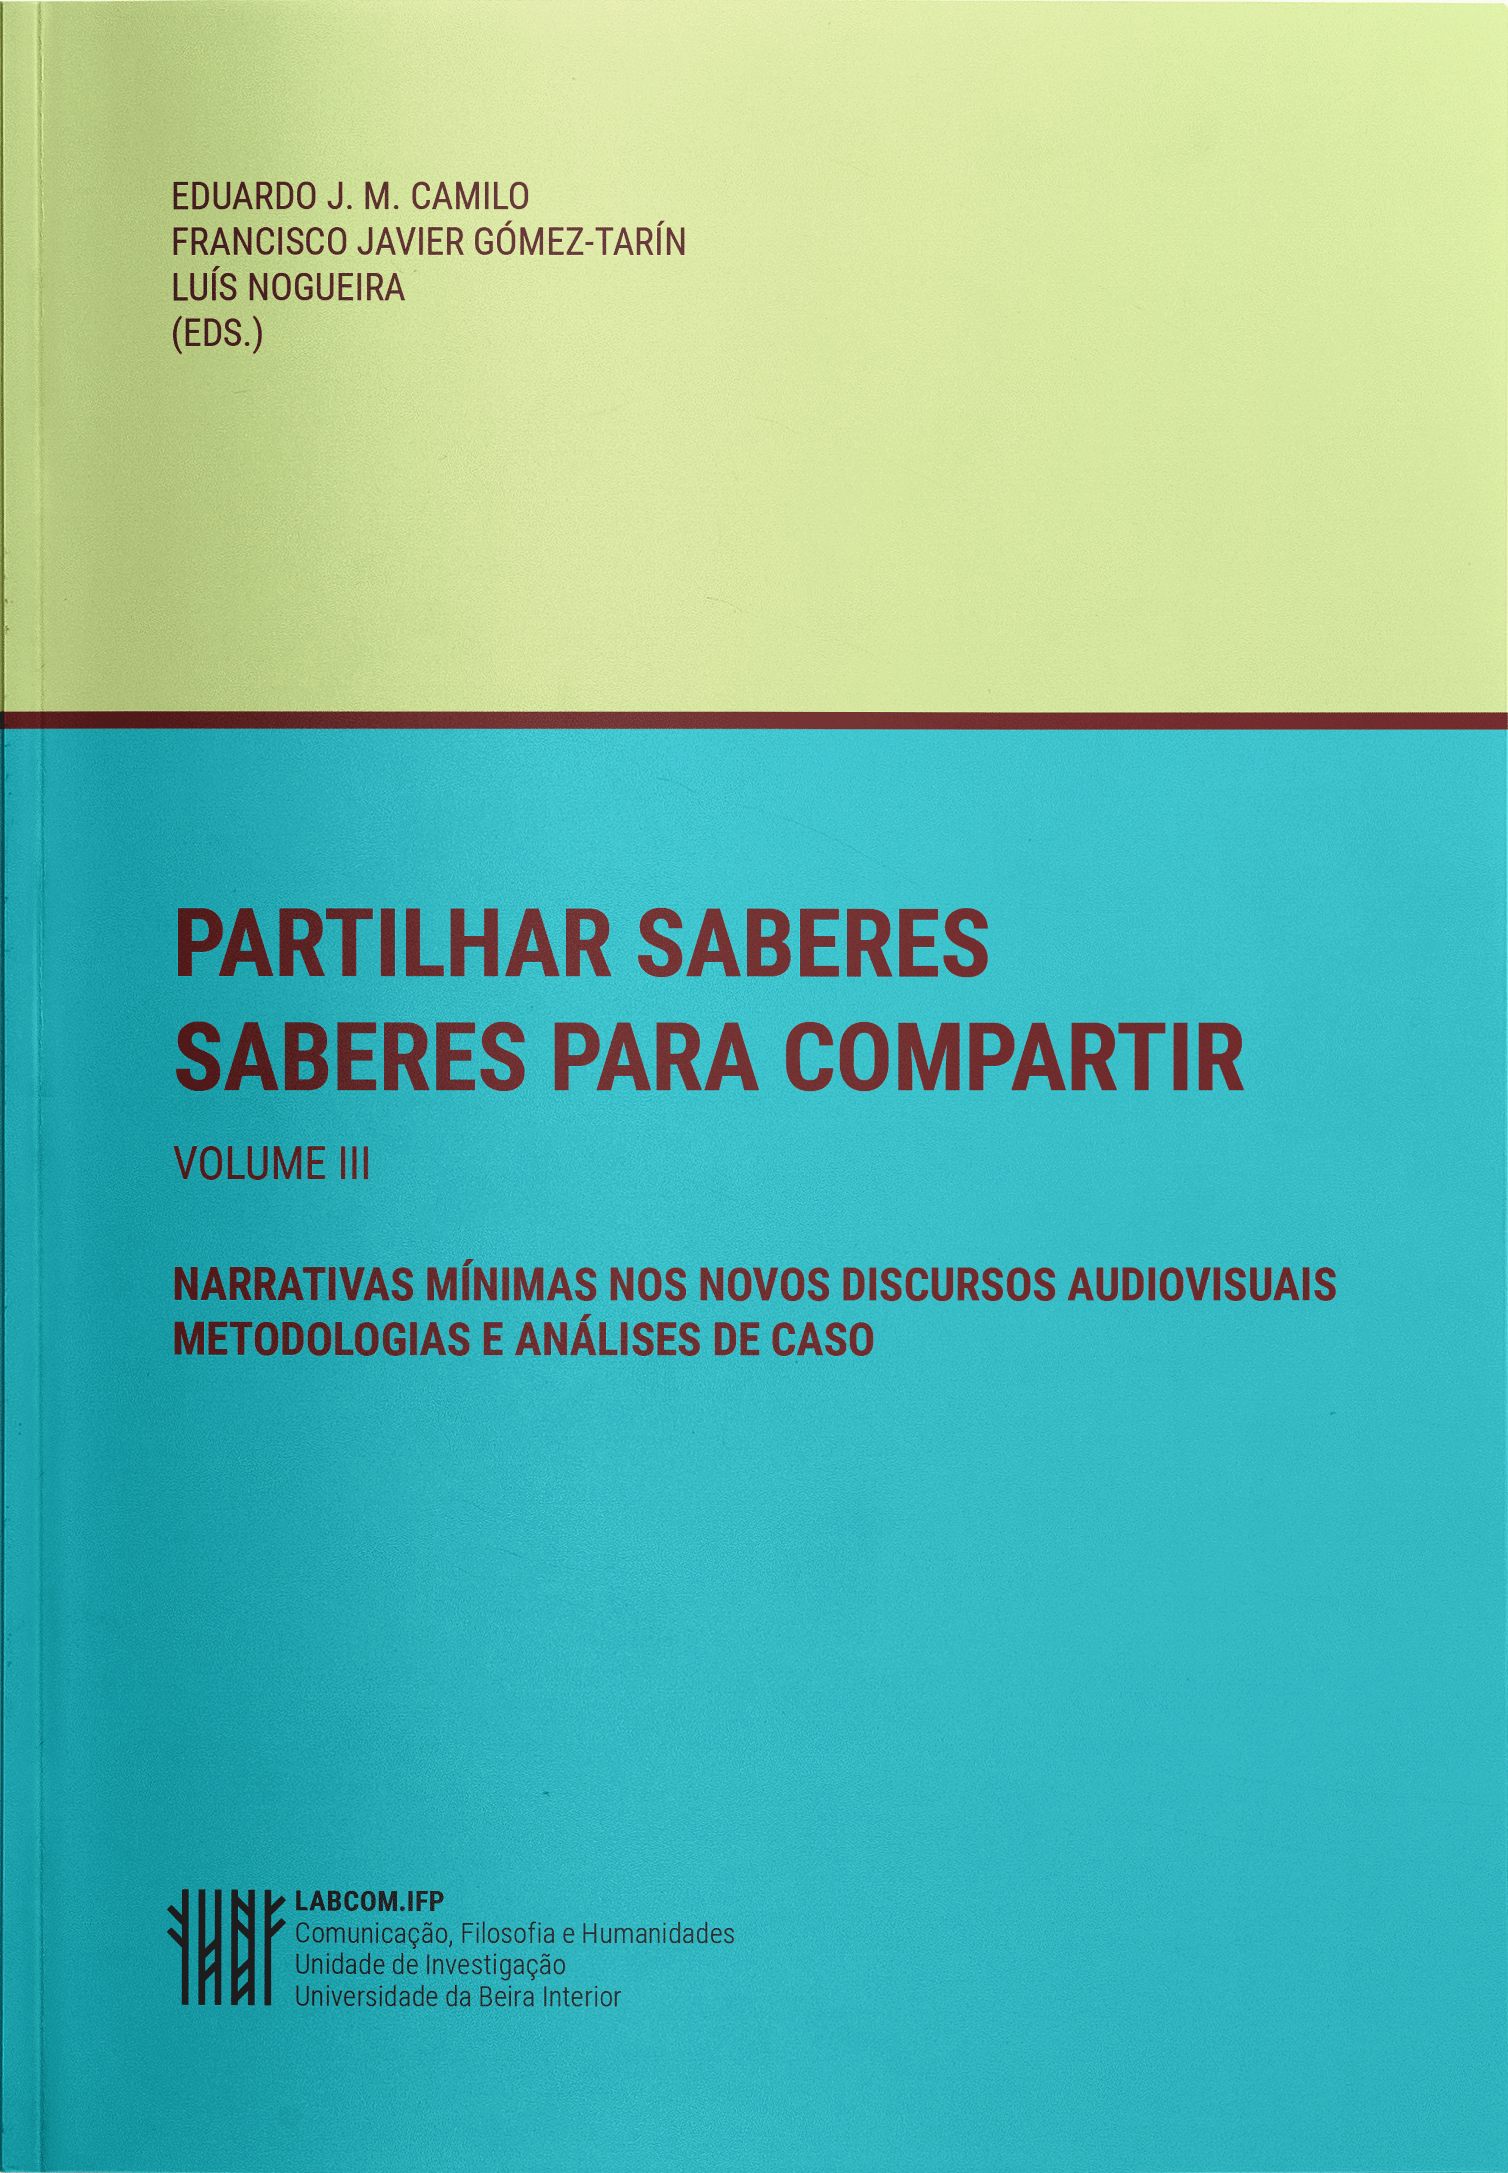 Imagen de portada del libro Narrativas mínimas nos novosdiscursos audiovisuais. Metodologias e análises de caso